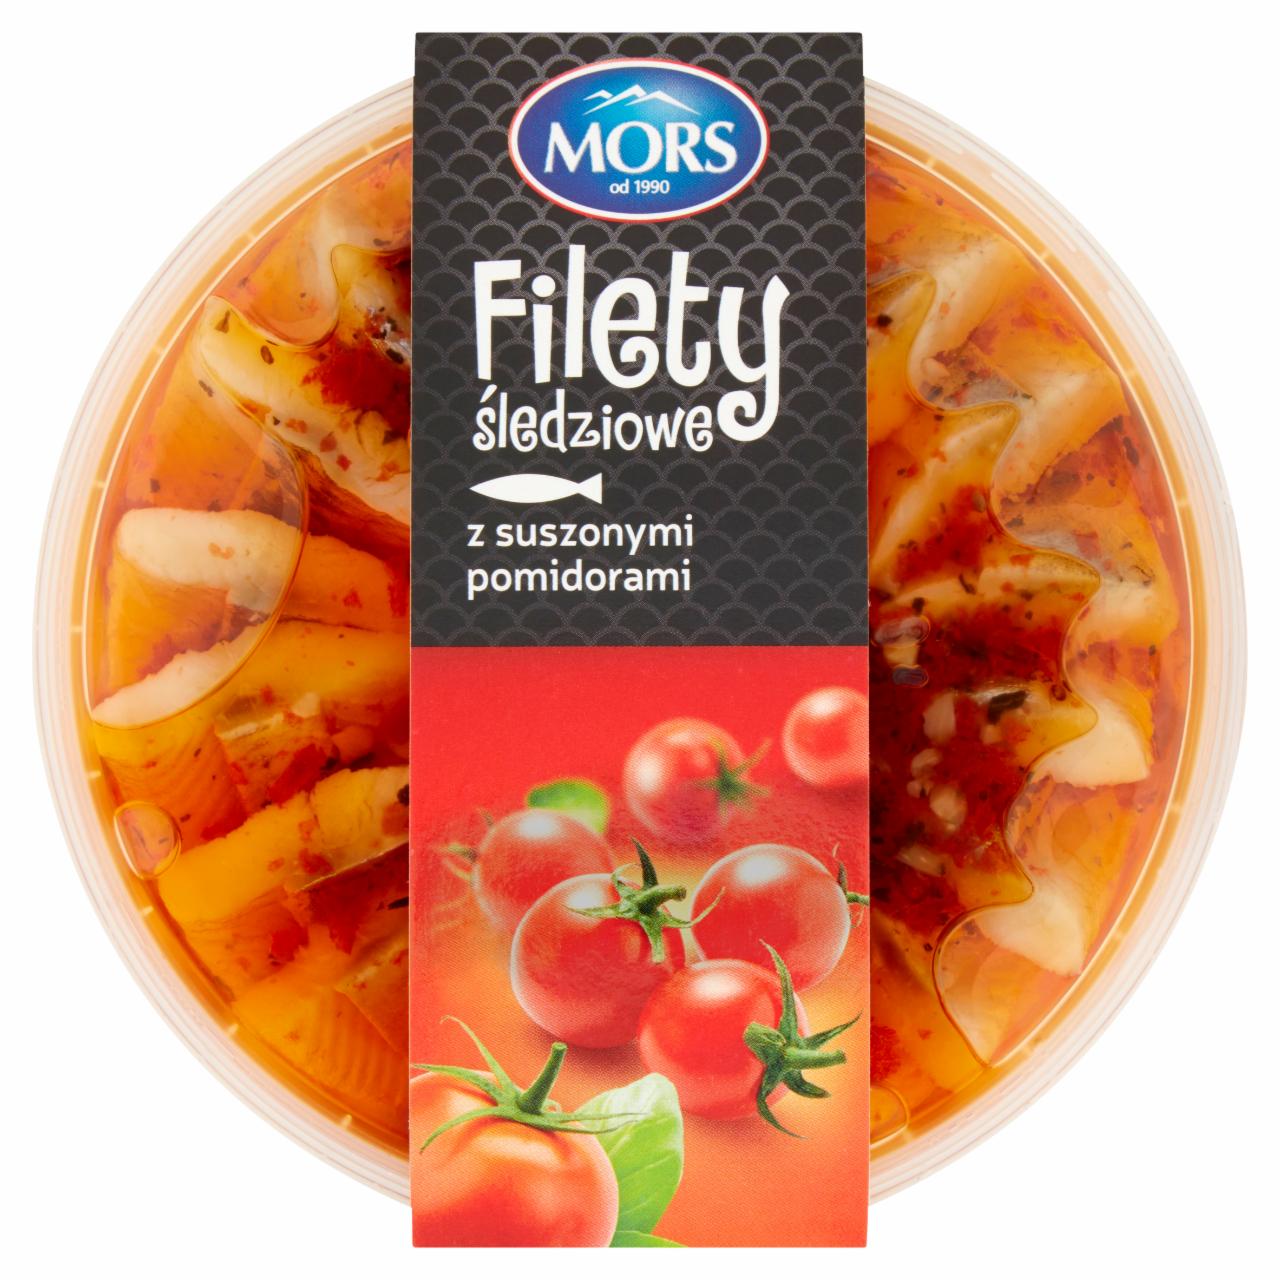 Zdjęcia - Mors Filety śledziowe z suszonymi pomidorami 220 g